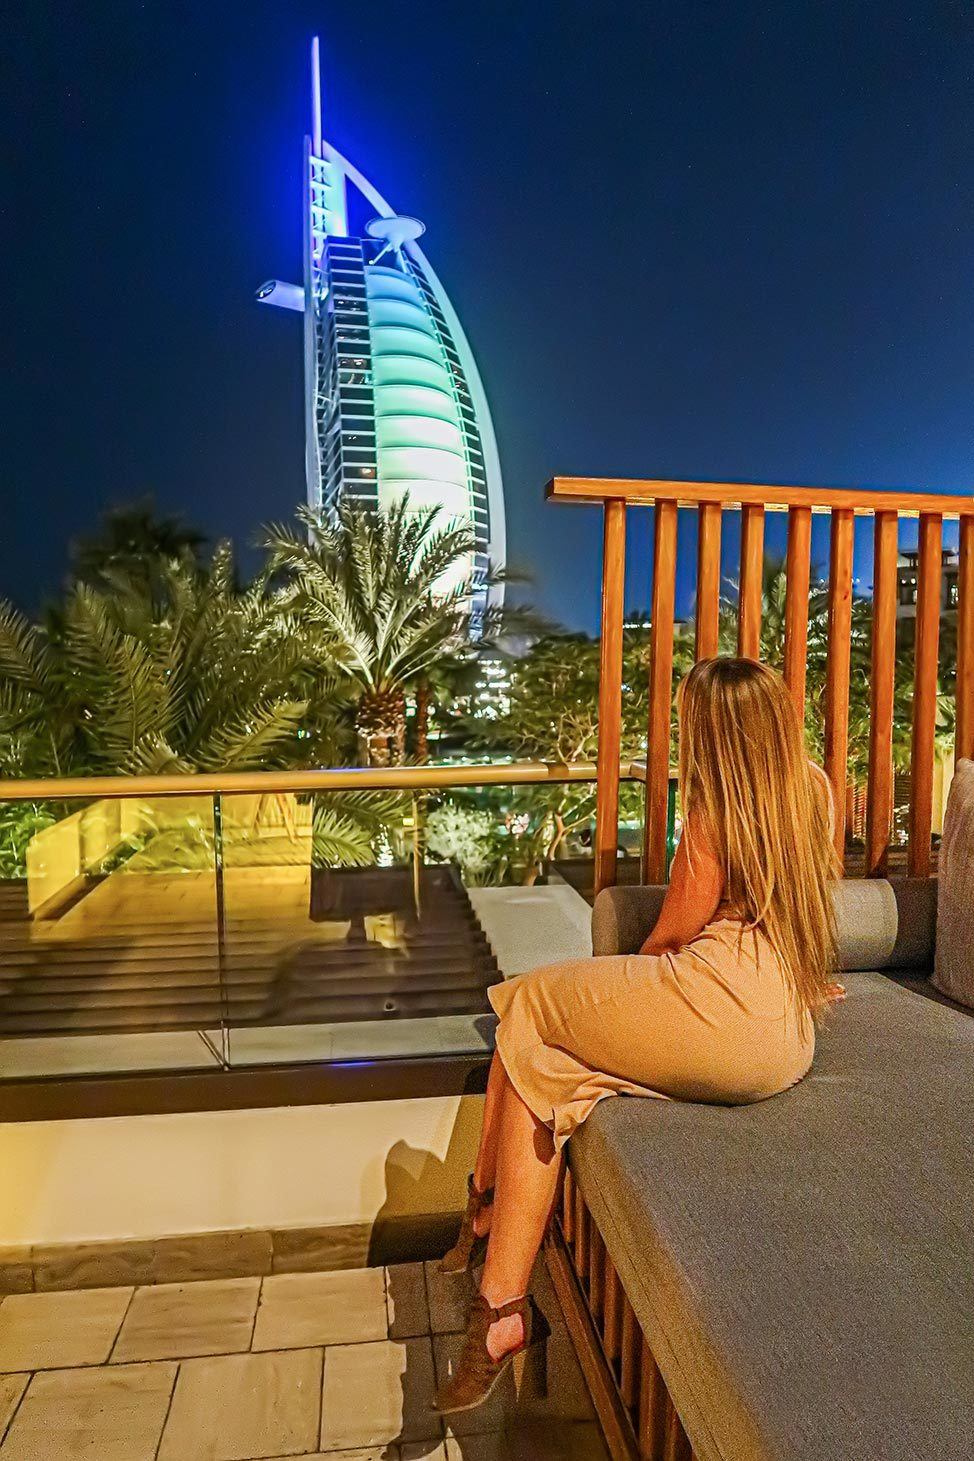 Alex mirando el Burj Al Arab en Dubai